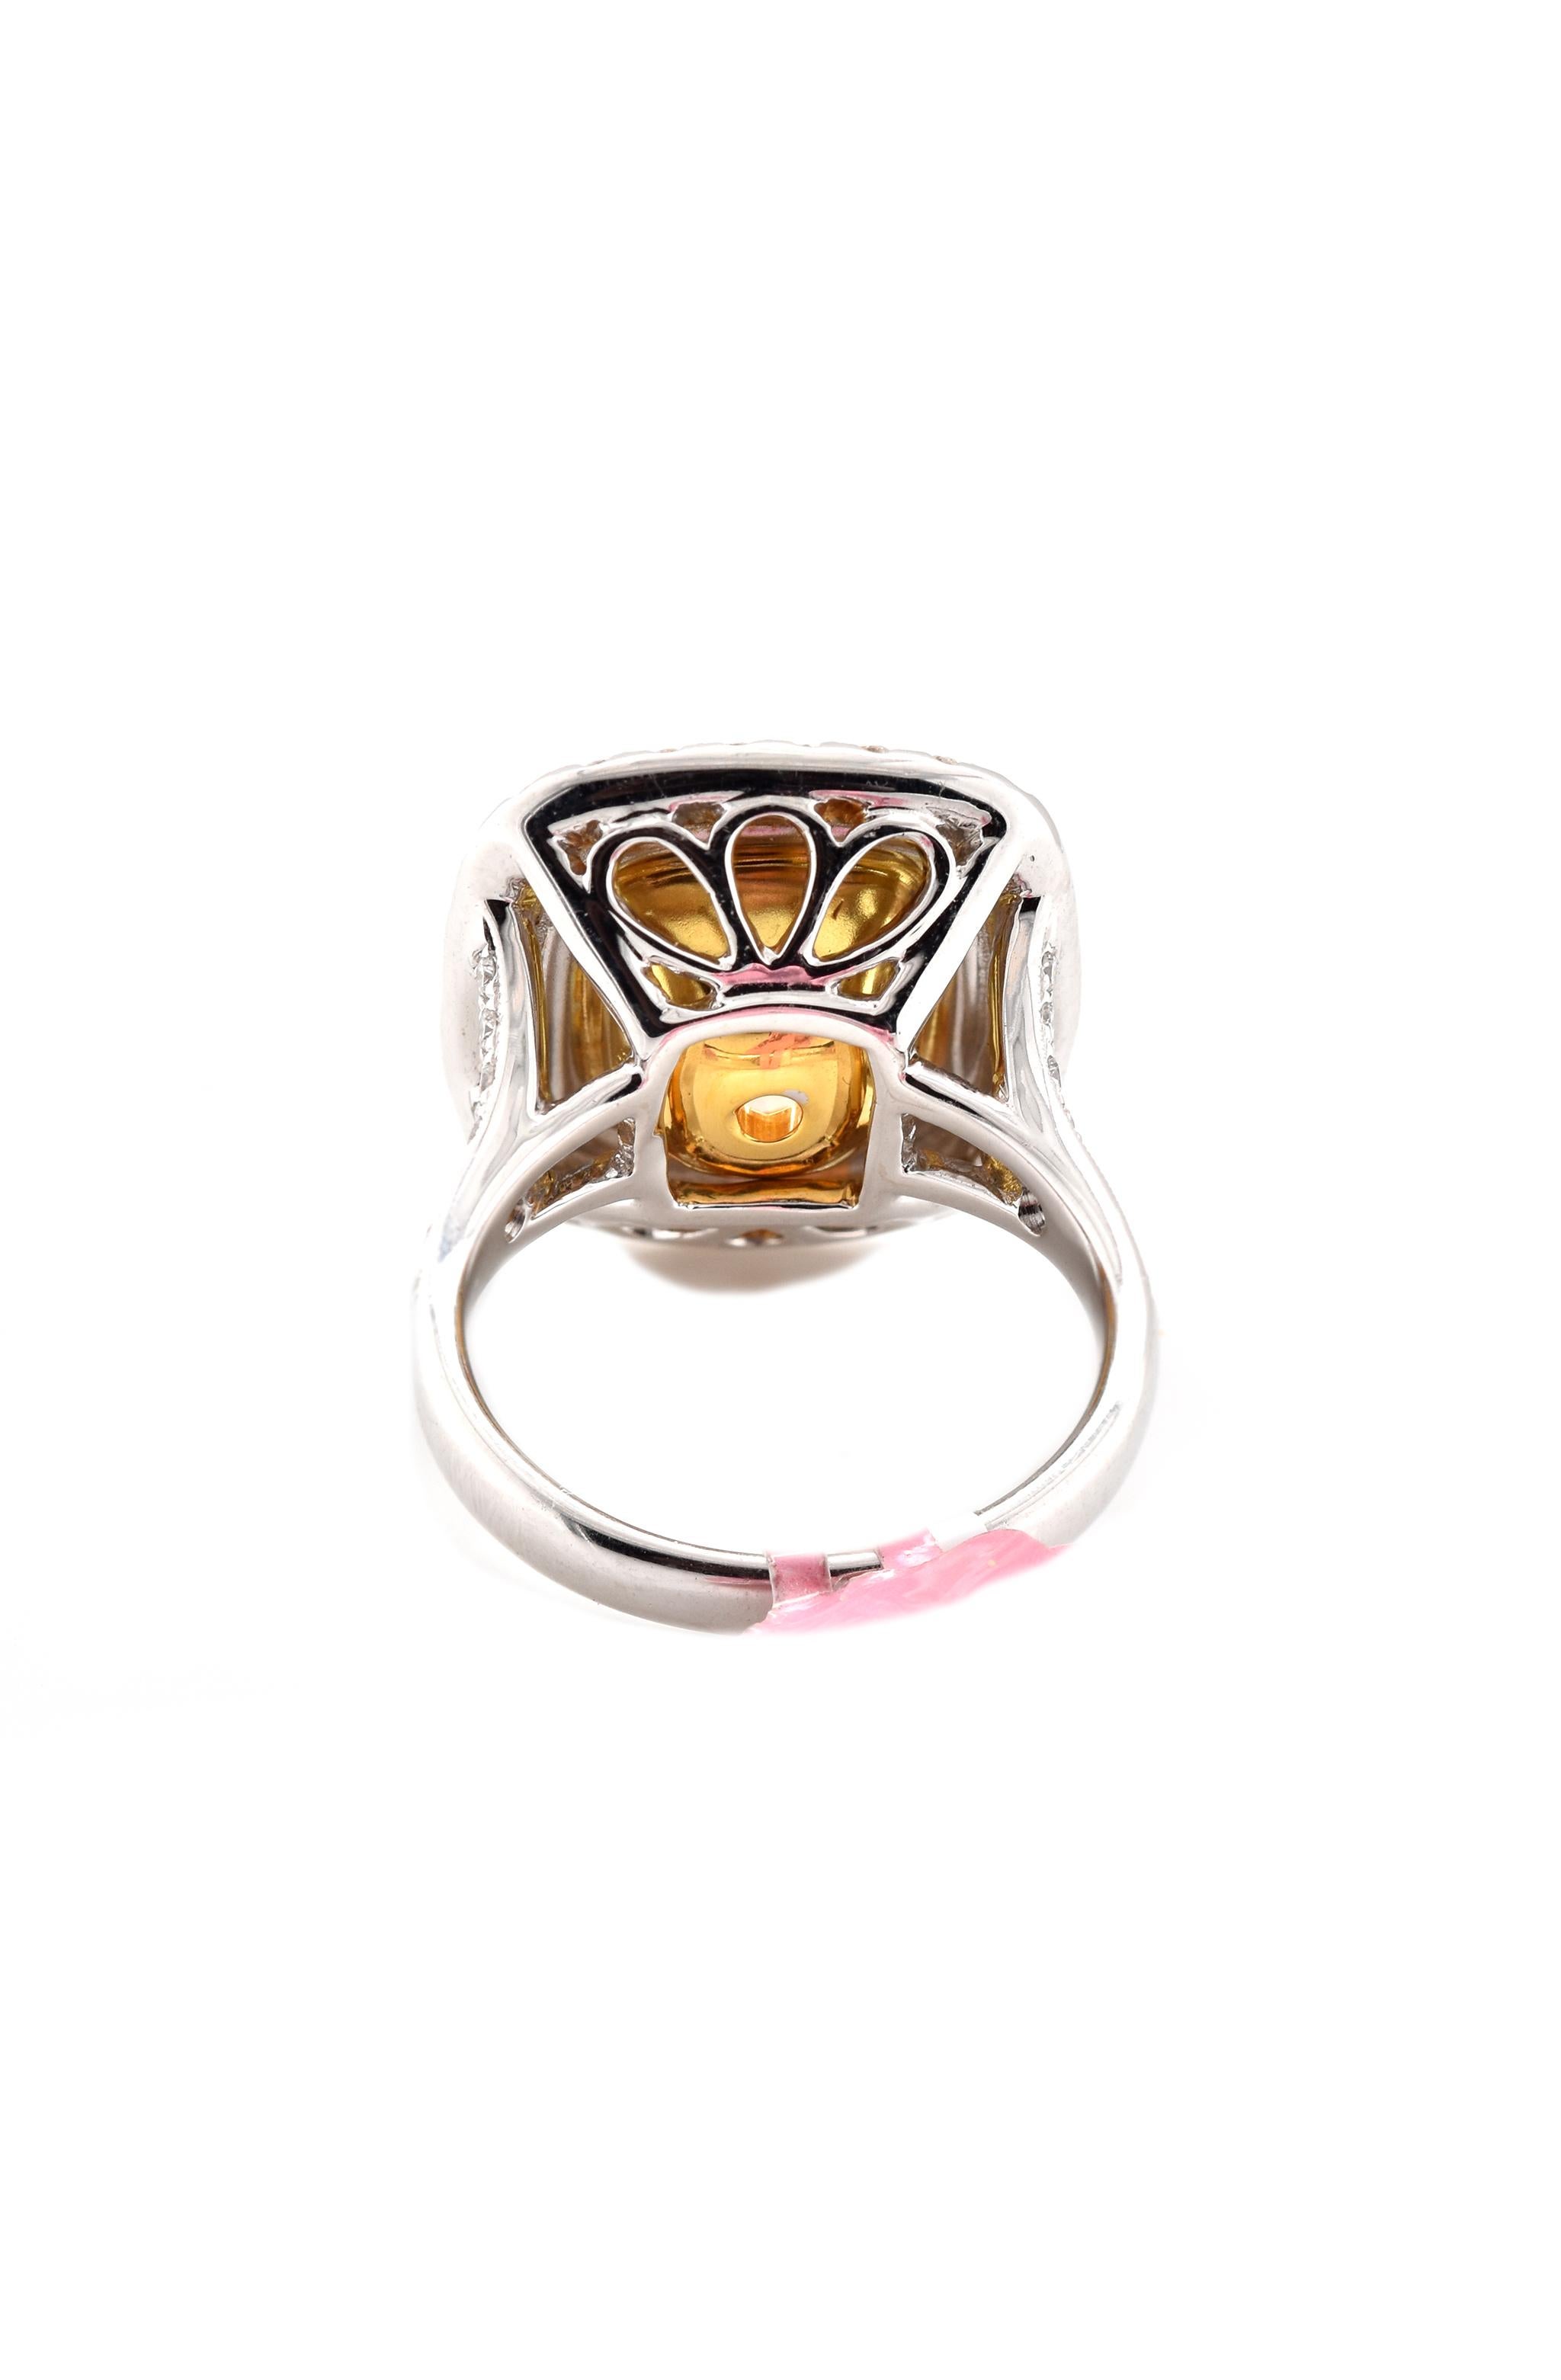 Cushion Cut 18 Karat White Gold Diamond Engagement Ring